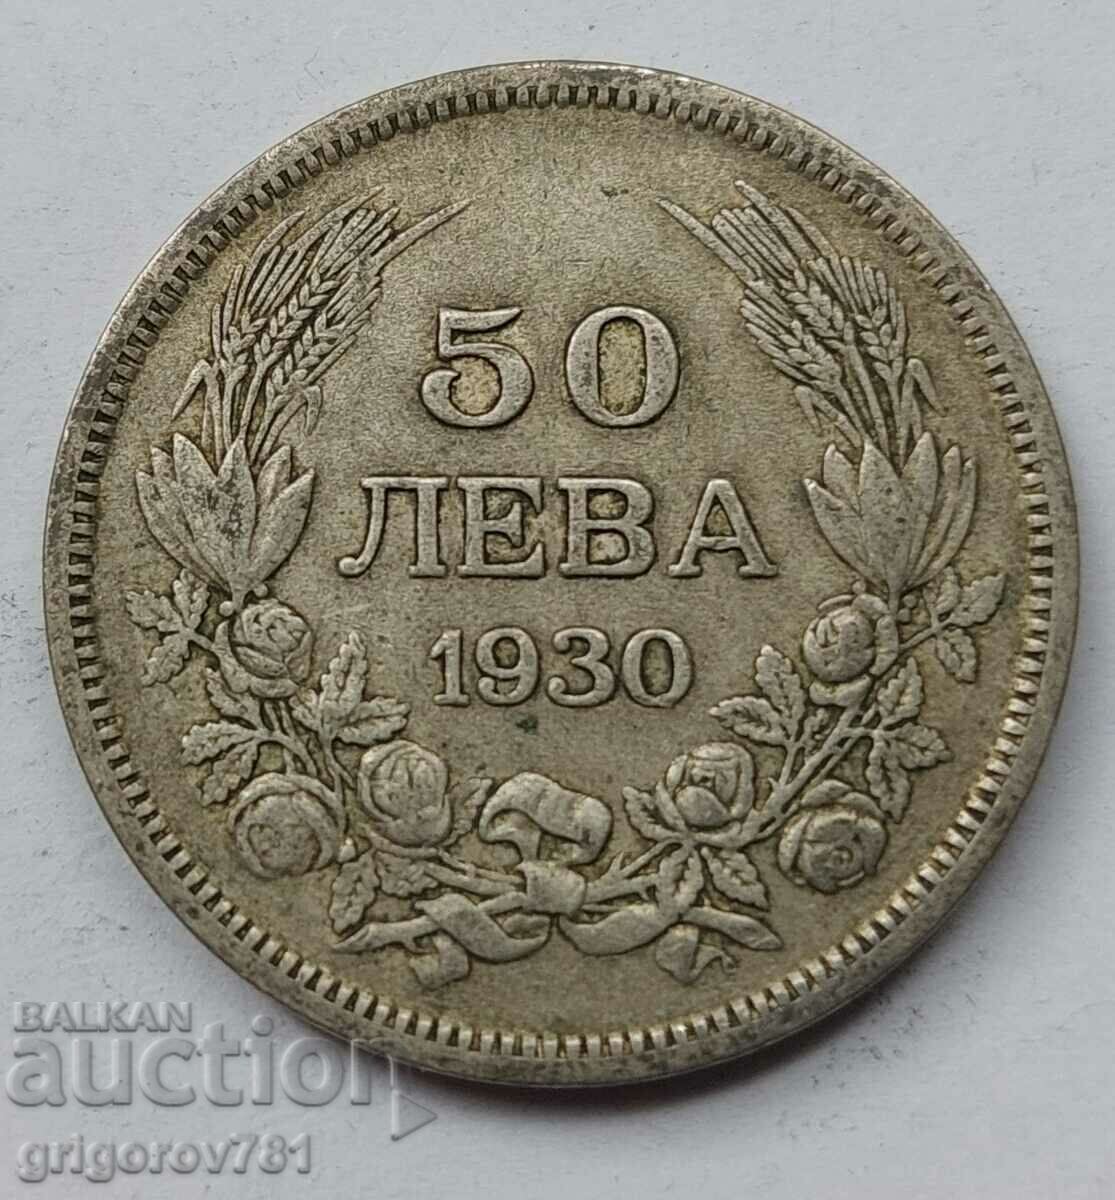 Ασήμι 50 λέβα Βουλγαρία 1930 - ασημένιο νόμισμα #76